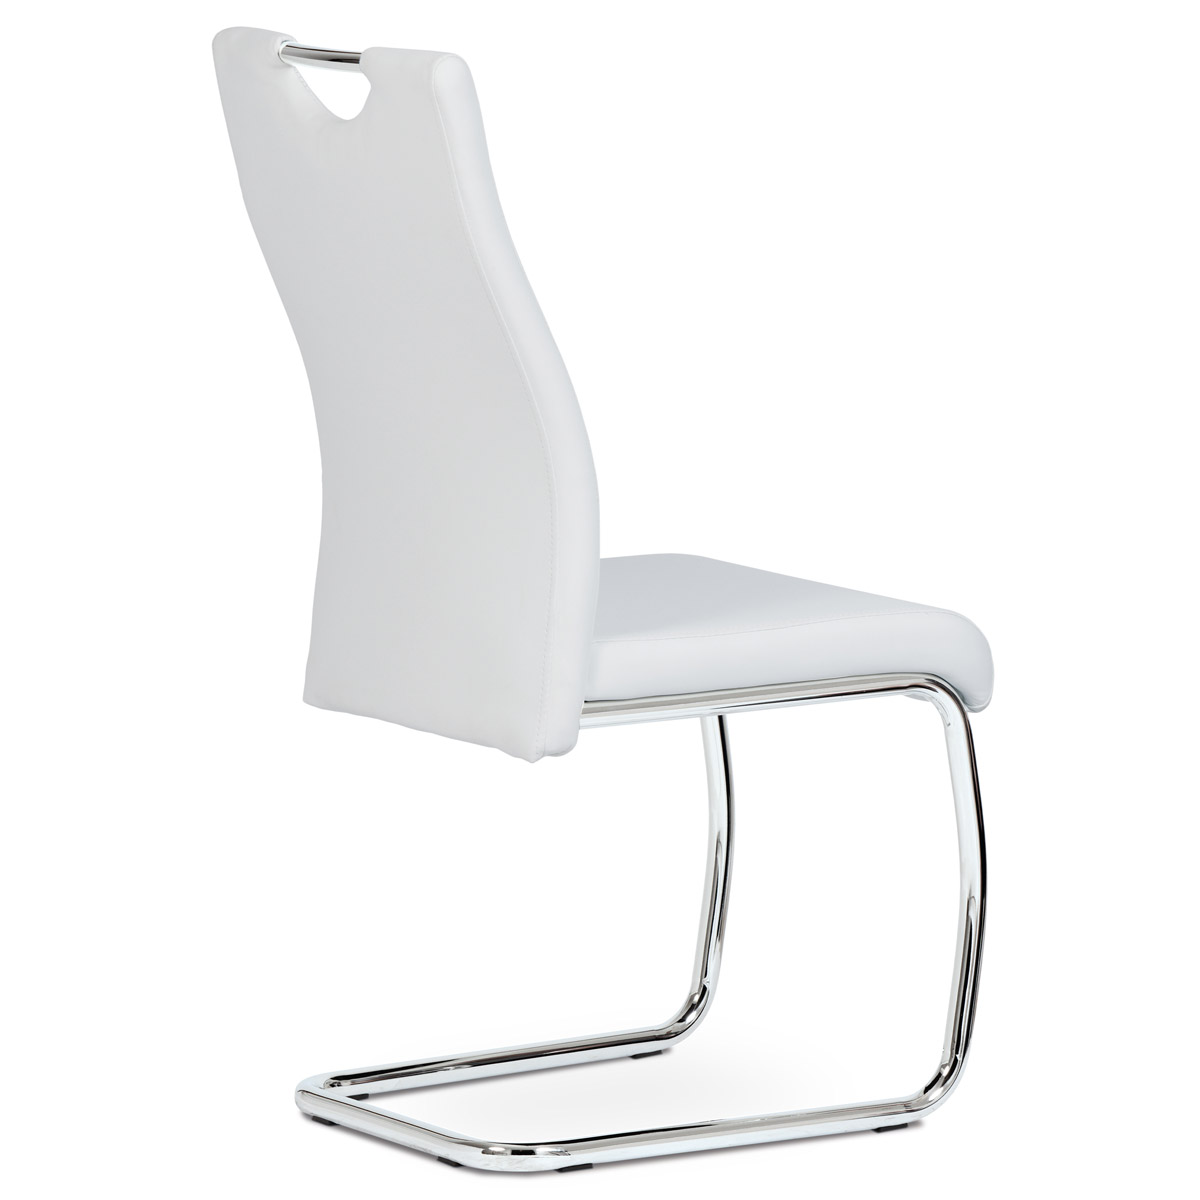 Jídelní židle koženka bílá / chrom